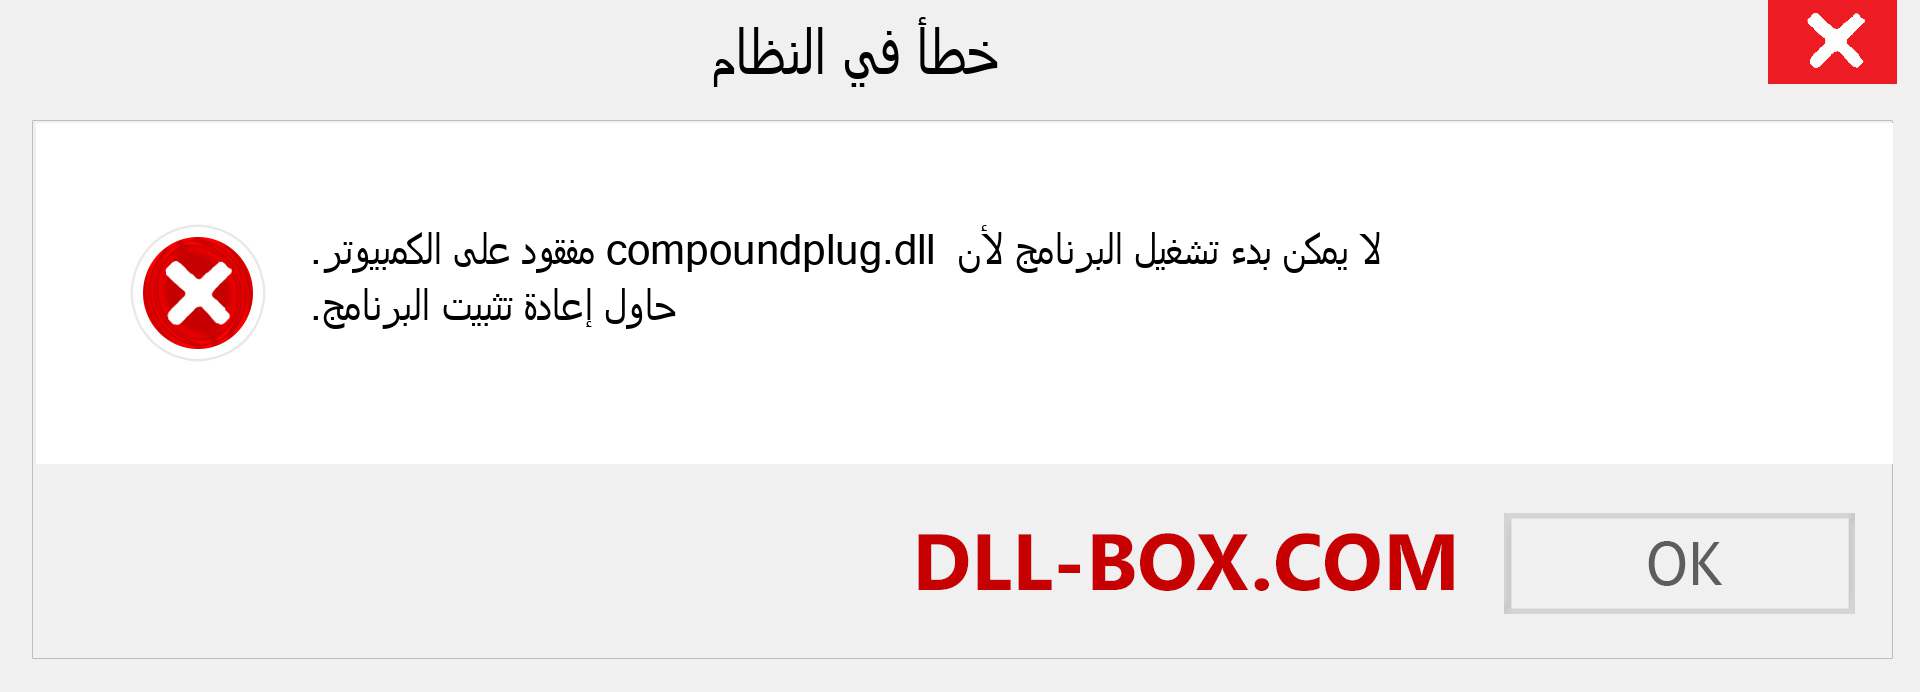 ملف compoundplug.dll مفقود ؟. التنزيل لنظام التشغيل Windows 7 و 8 و 10 - إصلاح خطأ compoundplug dll المفقود على Windows والصور والصور